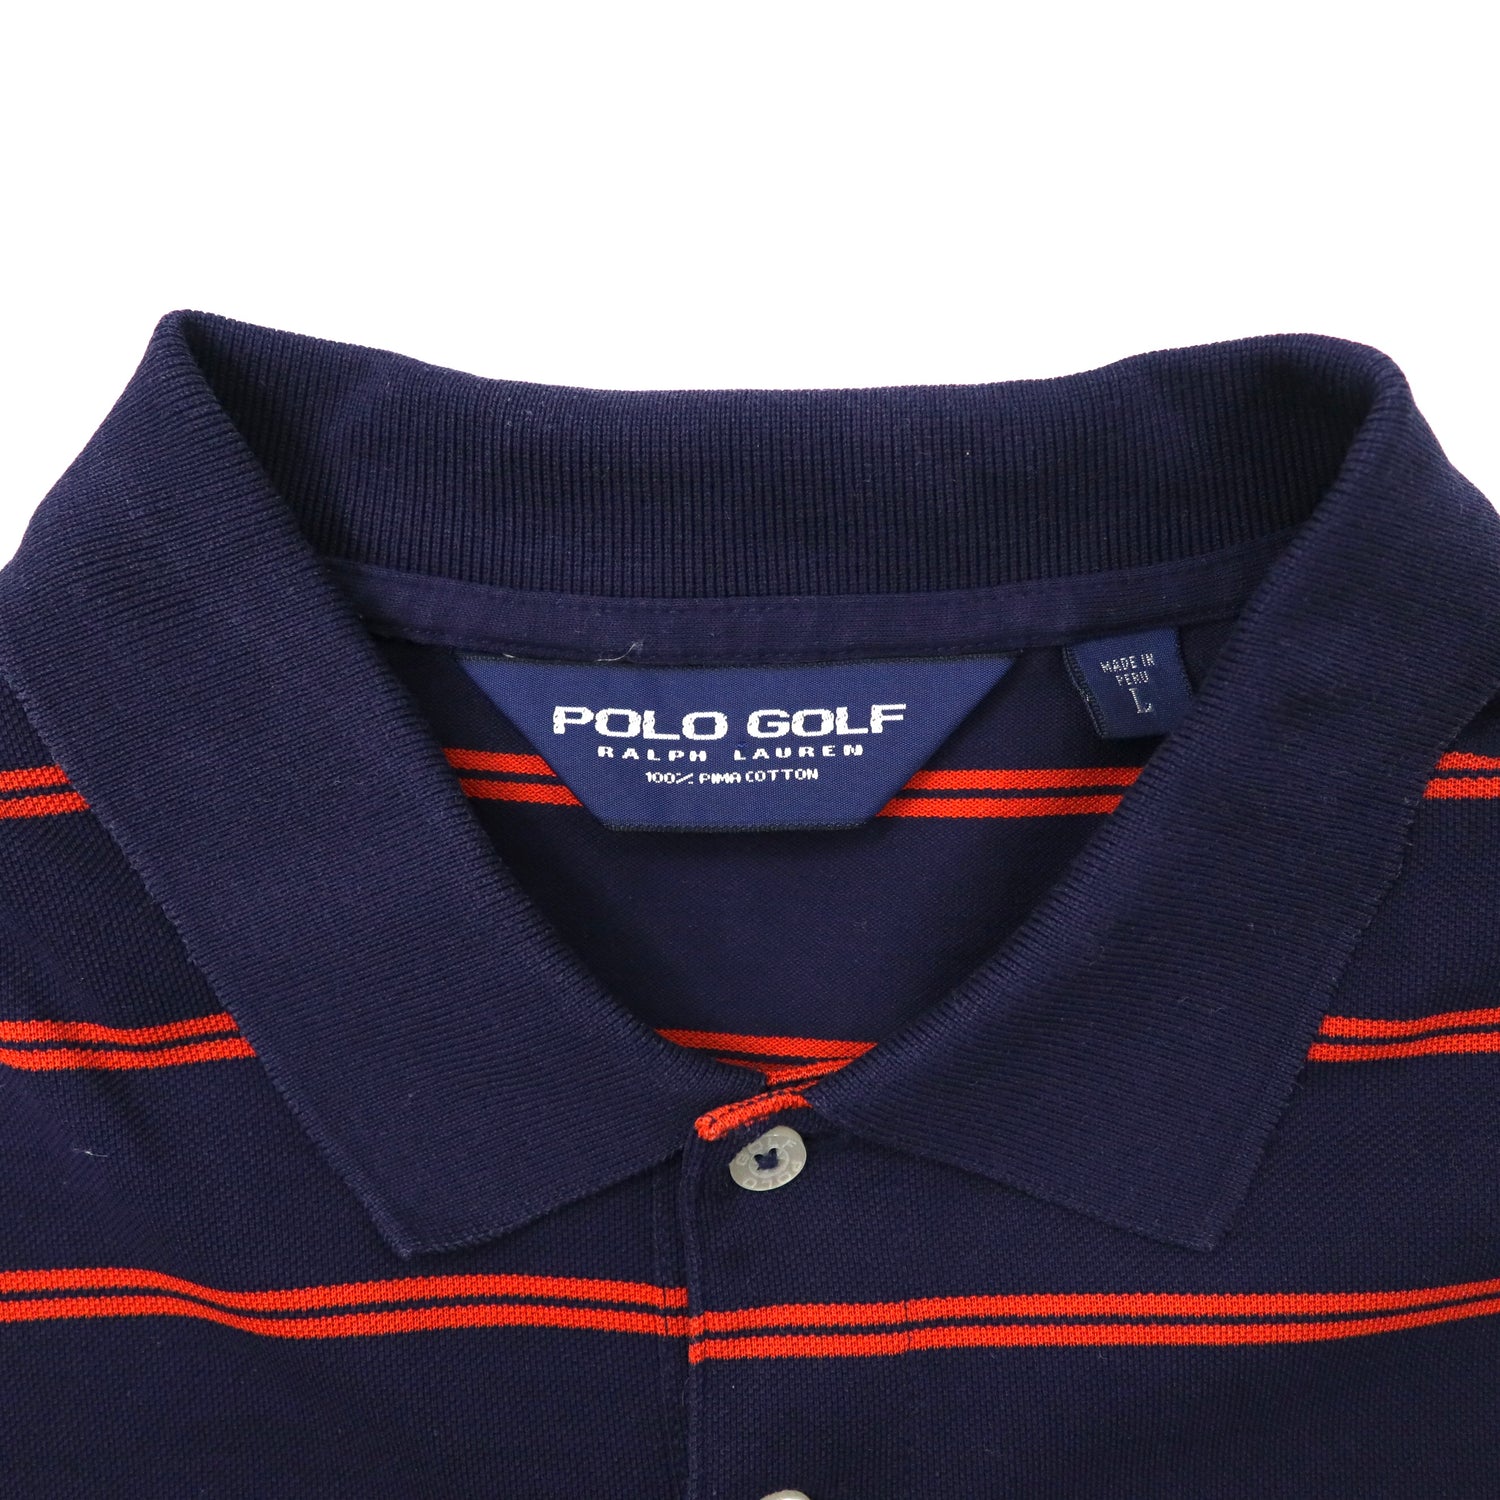 polo golf ラルフローレン ボーダー 長袖ポロシャツトップス - Tシャツ